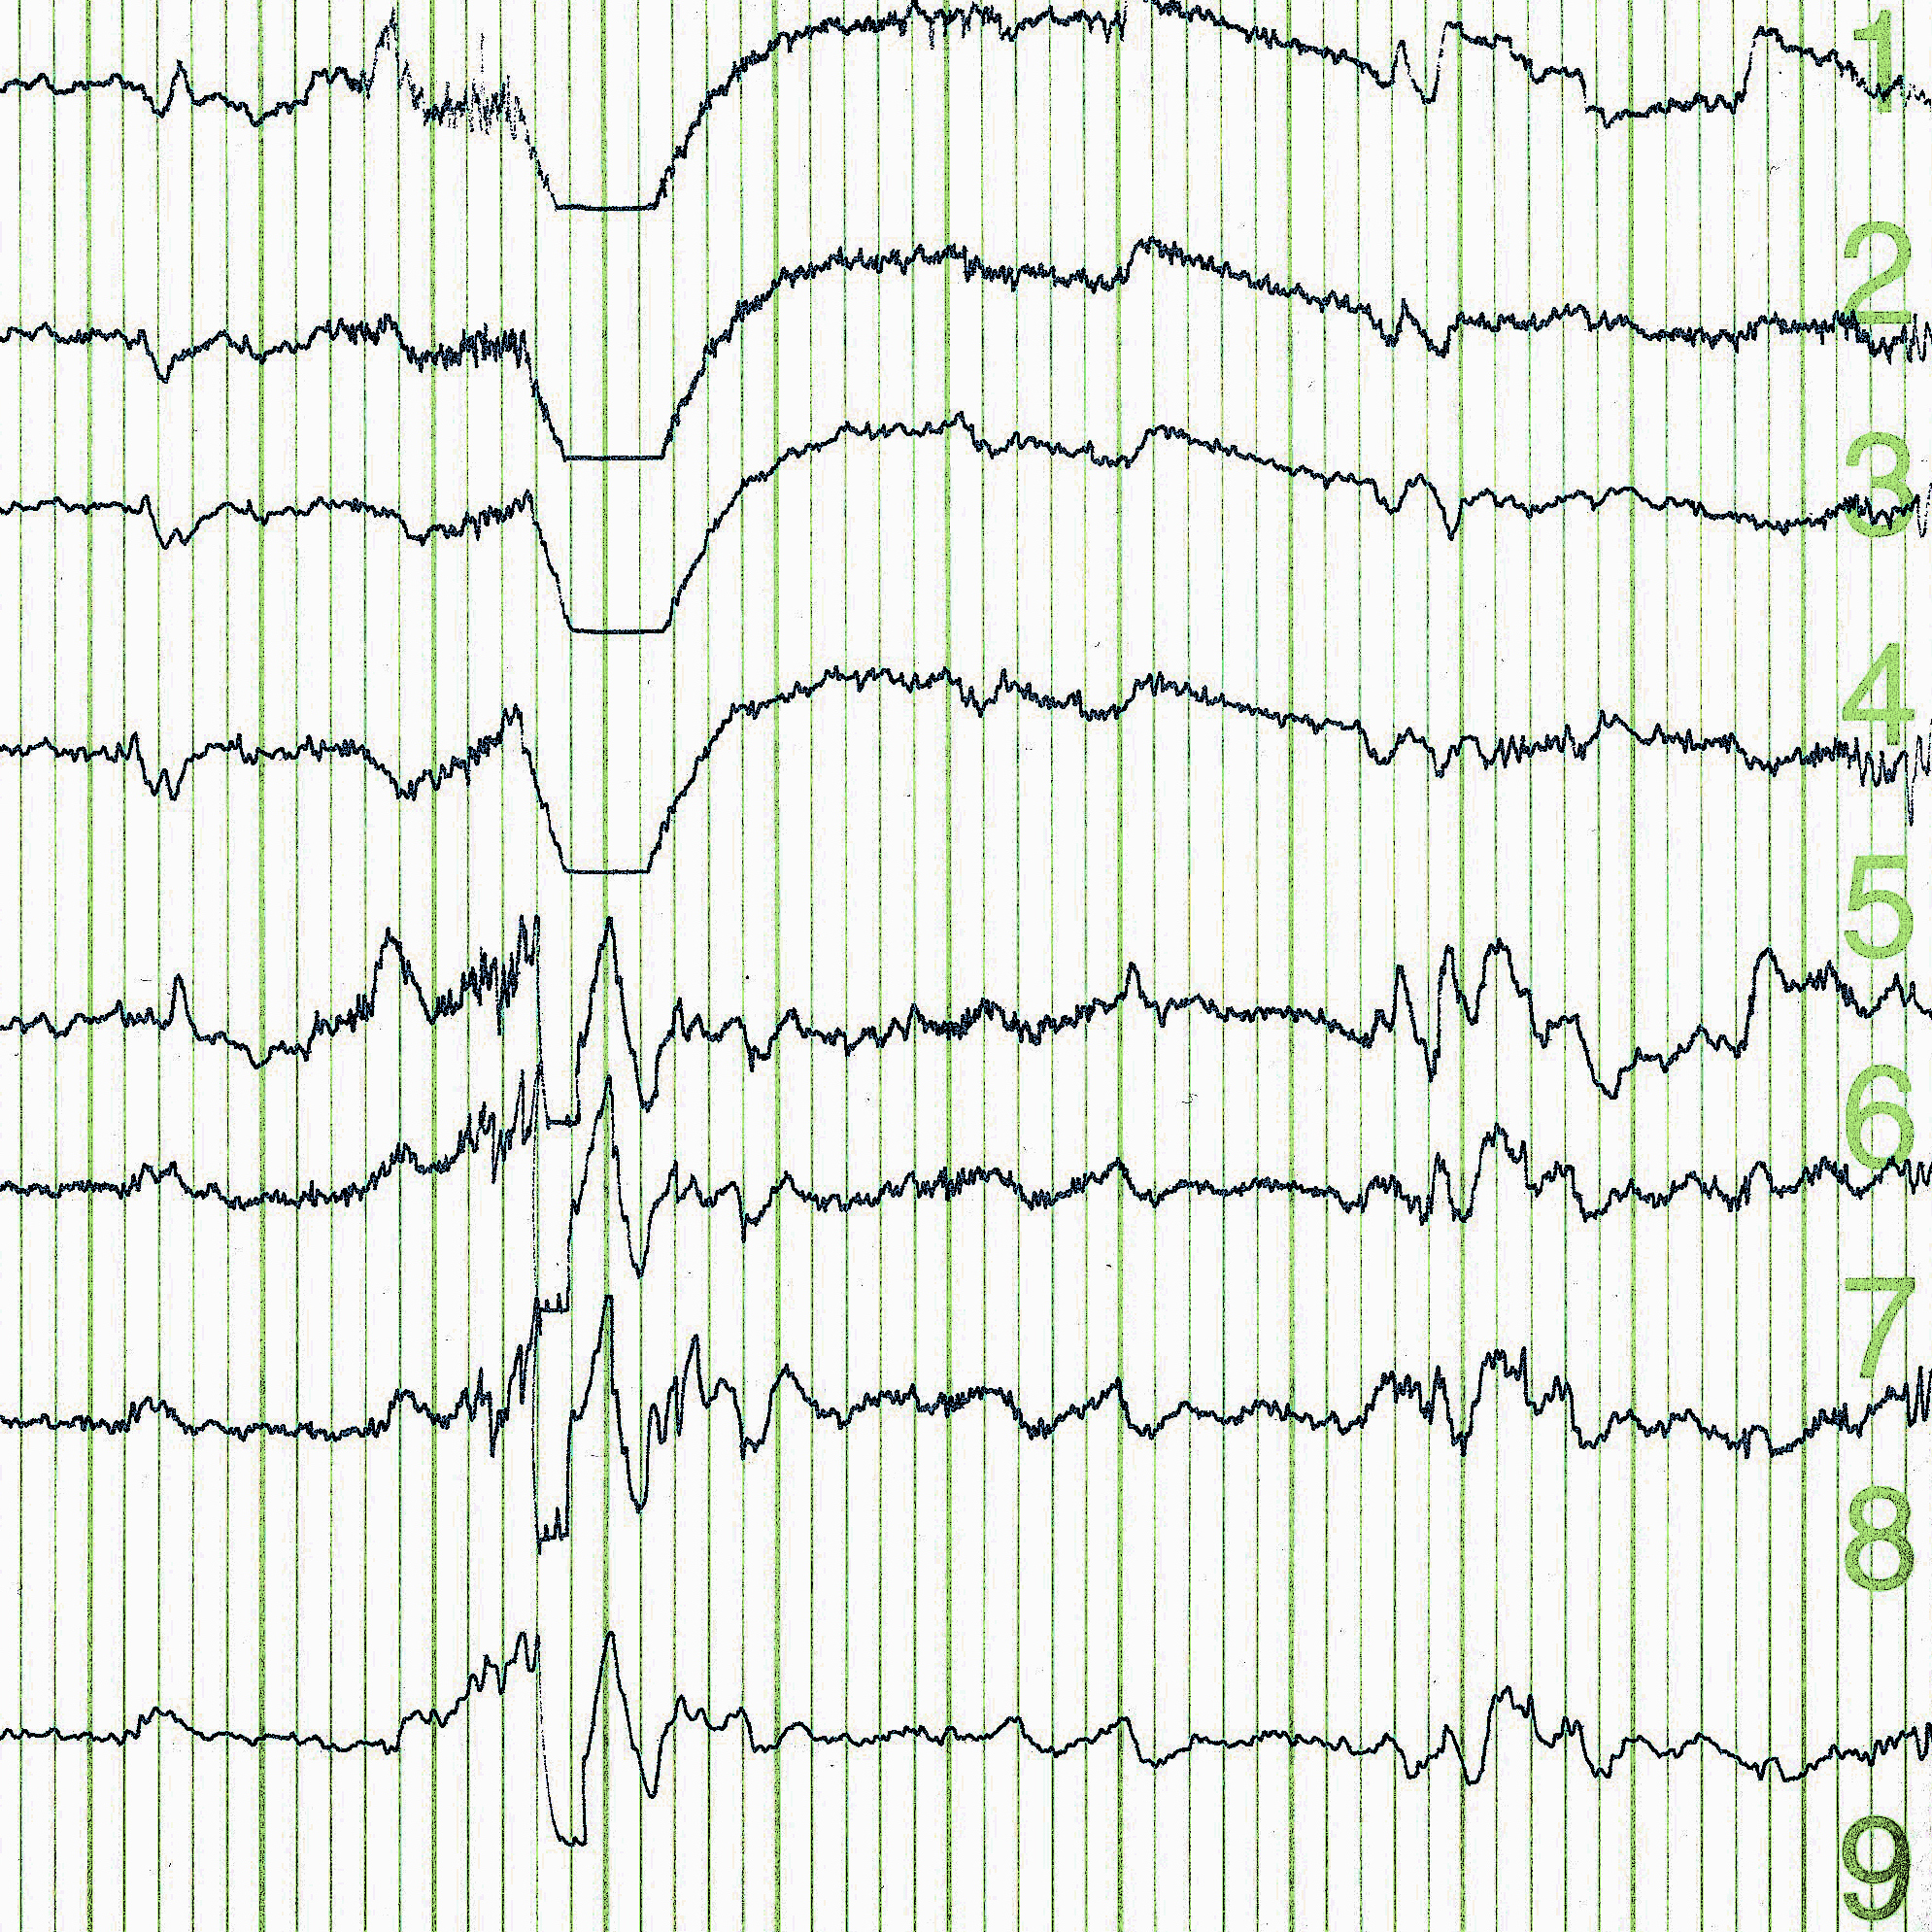 EEG brain wave.